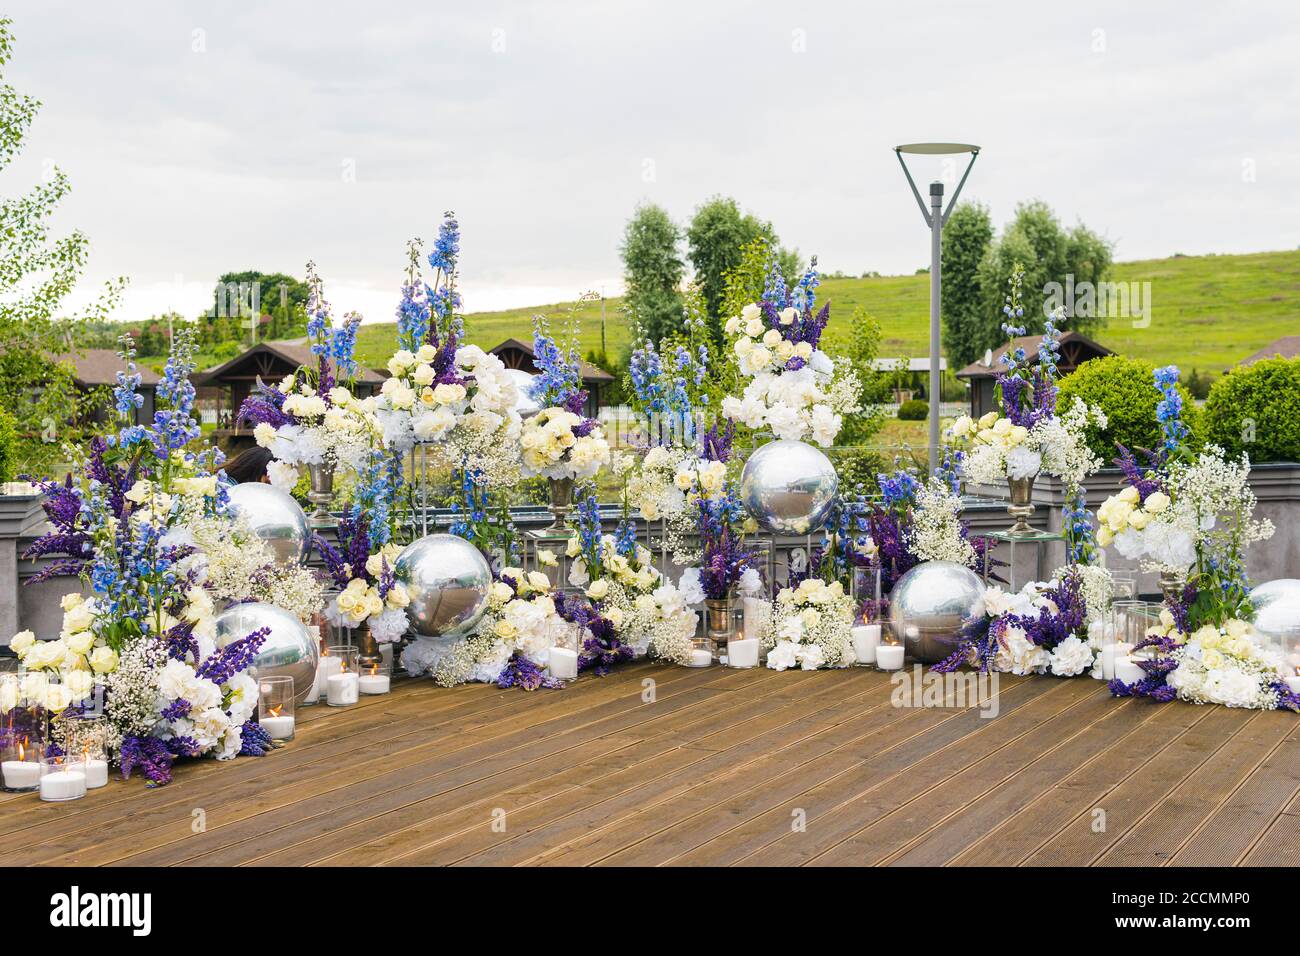 Réception de mariage avec fleurs blanches, blu et violettes et bougies, à l'extérieur. Élégante décoration de mariage de luxe sur le lieu de cérémonie ou photo zo Banque D'Images